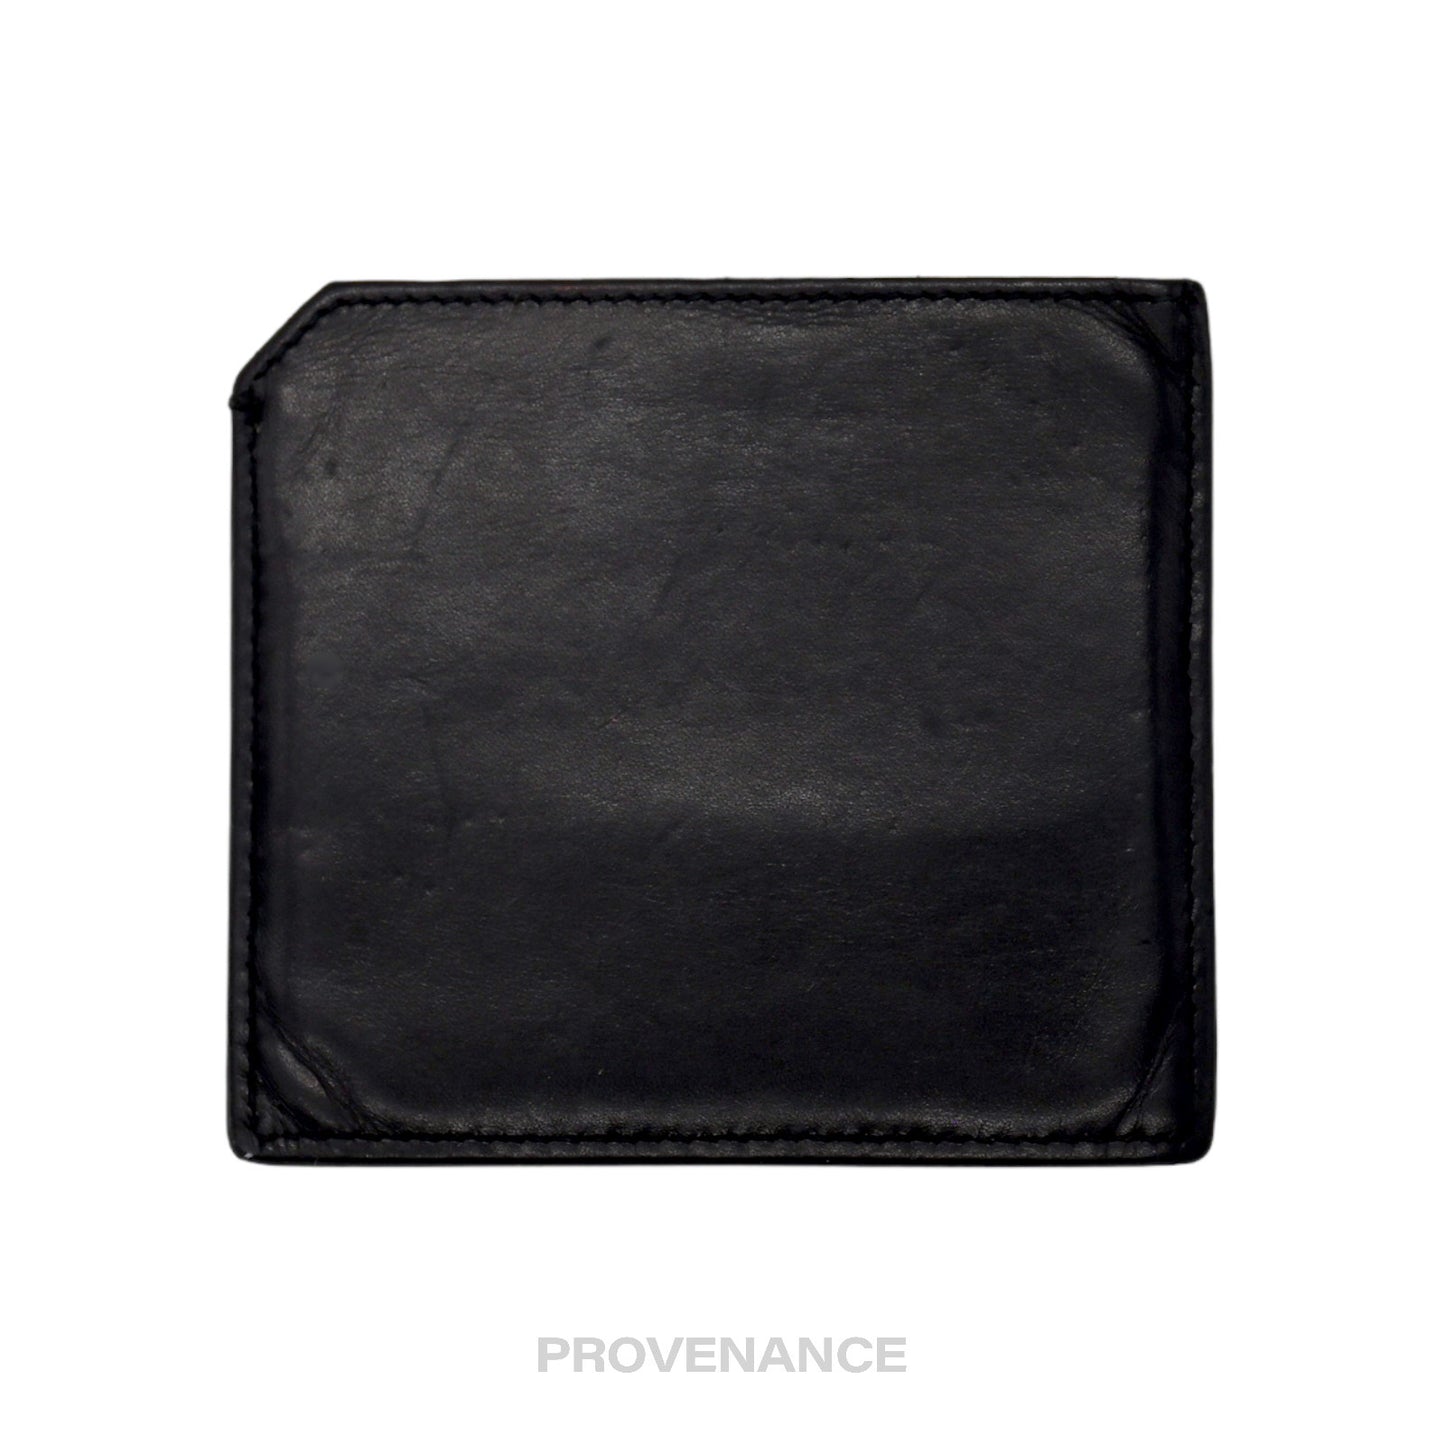 🔴 SLP Card Holder Wallet - Black Calfskin Leather